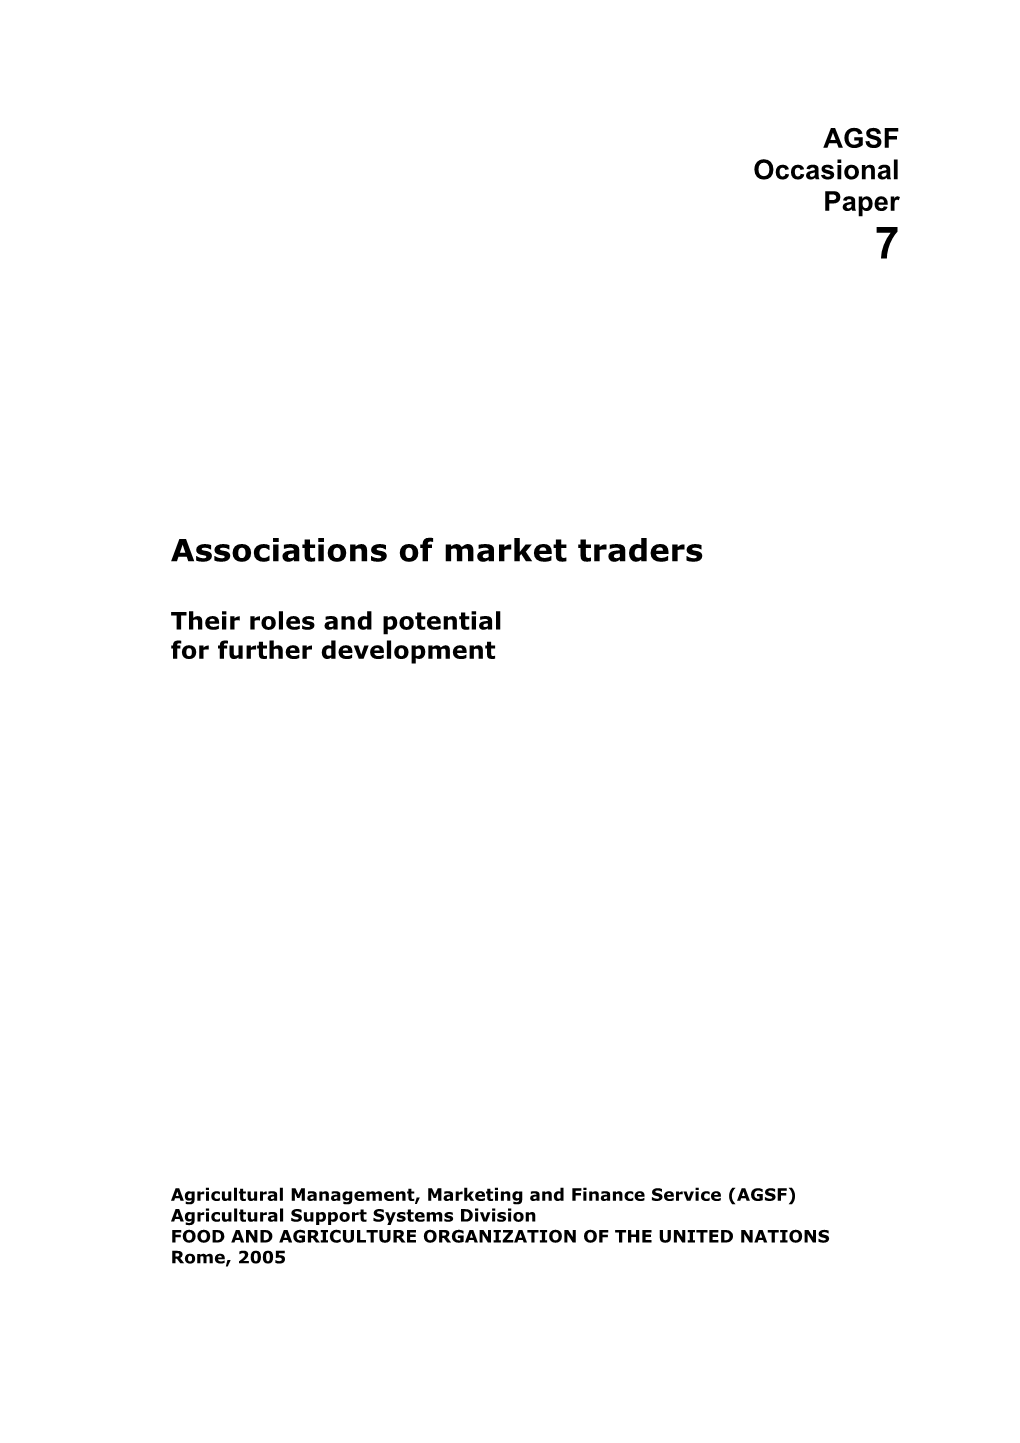 Associations of Market Traders